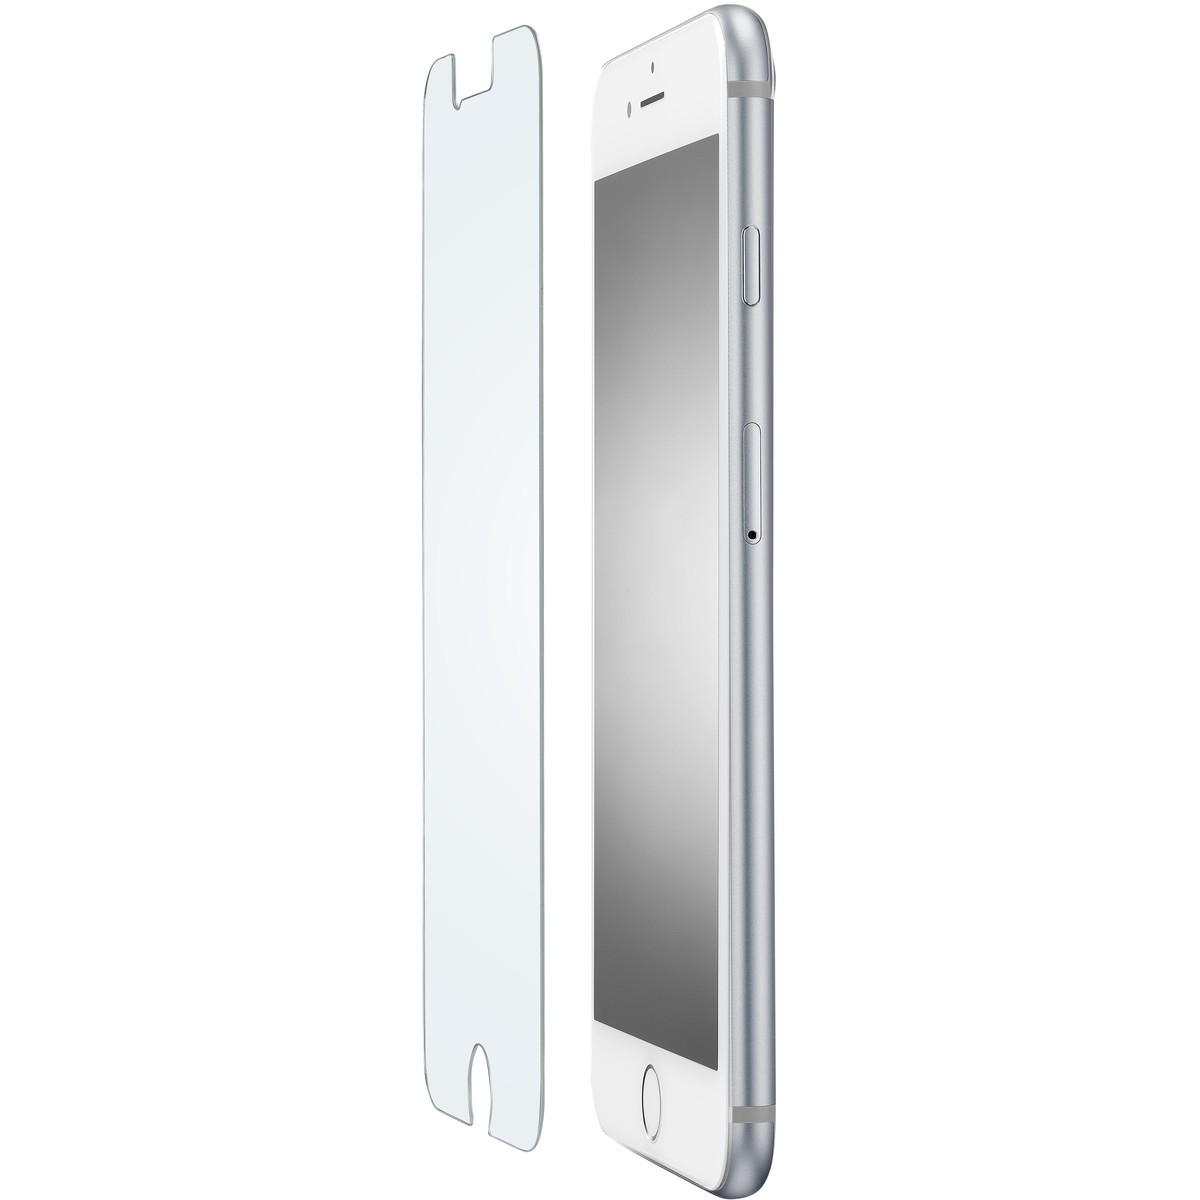 Schutzglas IMPACT GLASS für Apple iPhone 7 Plus/8 Plus